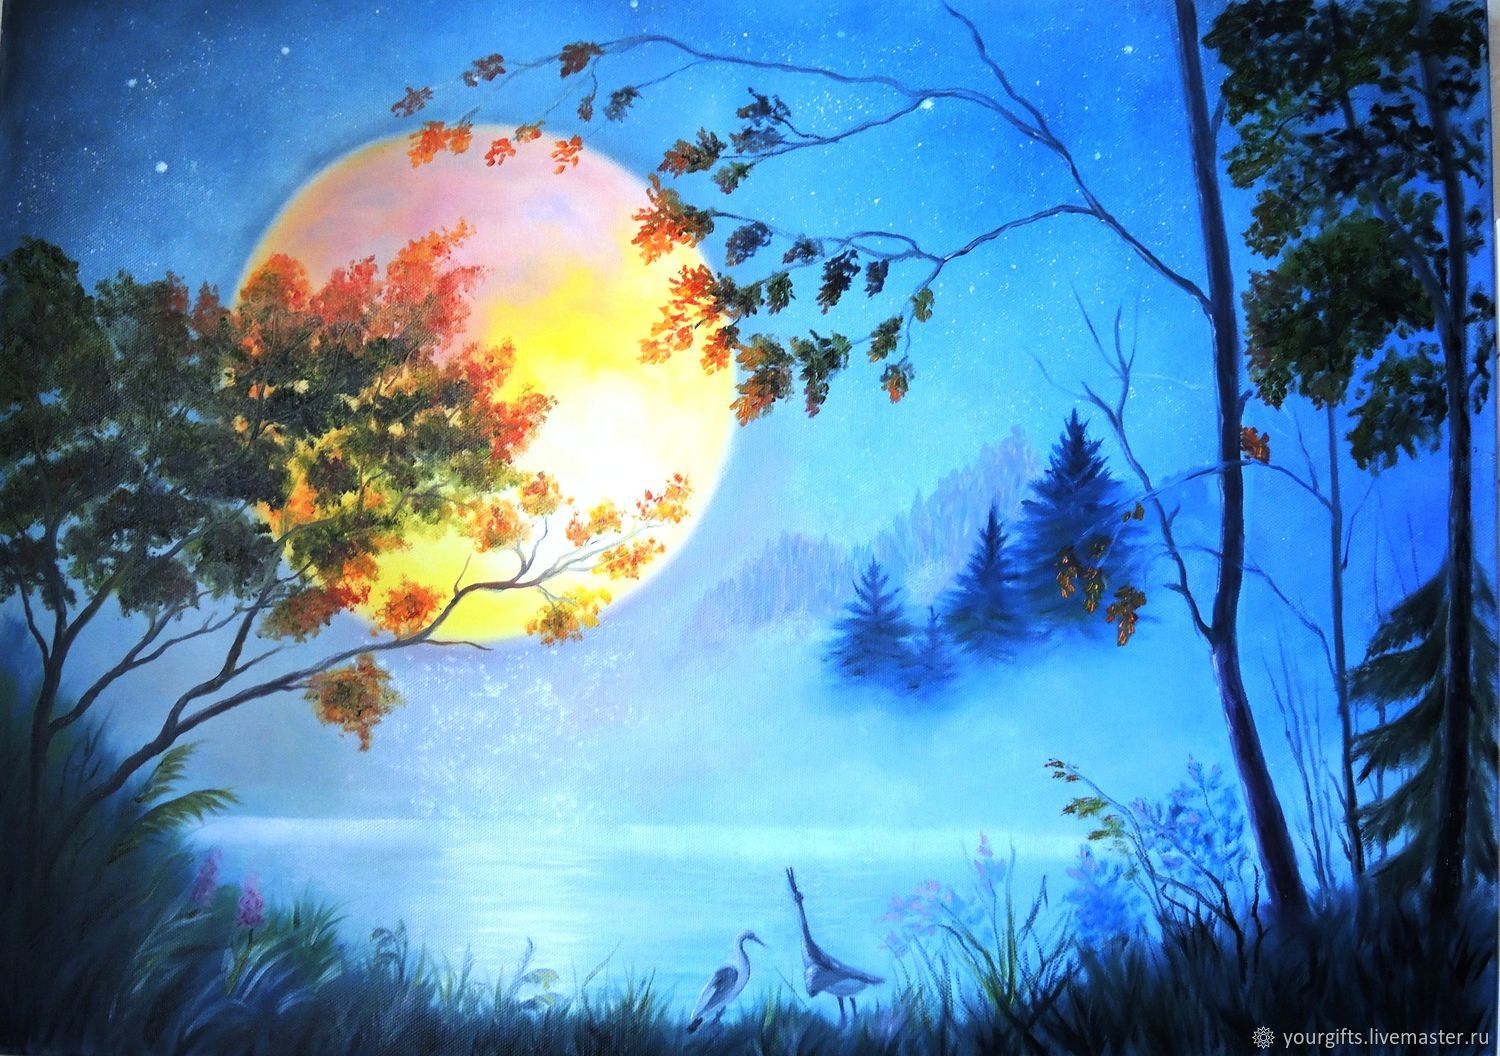 Иллюстрация к лунной сонате Бетховена